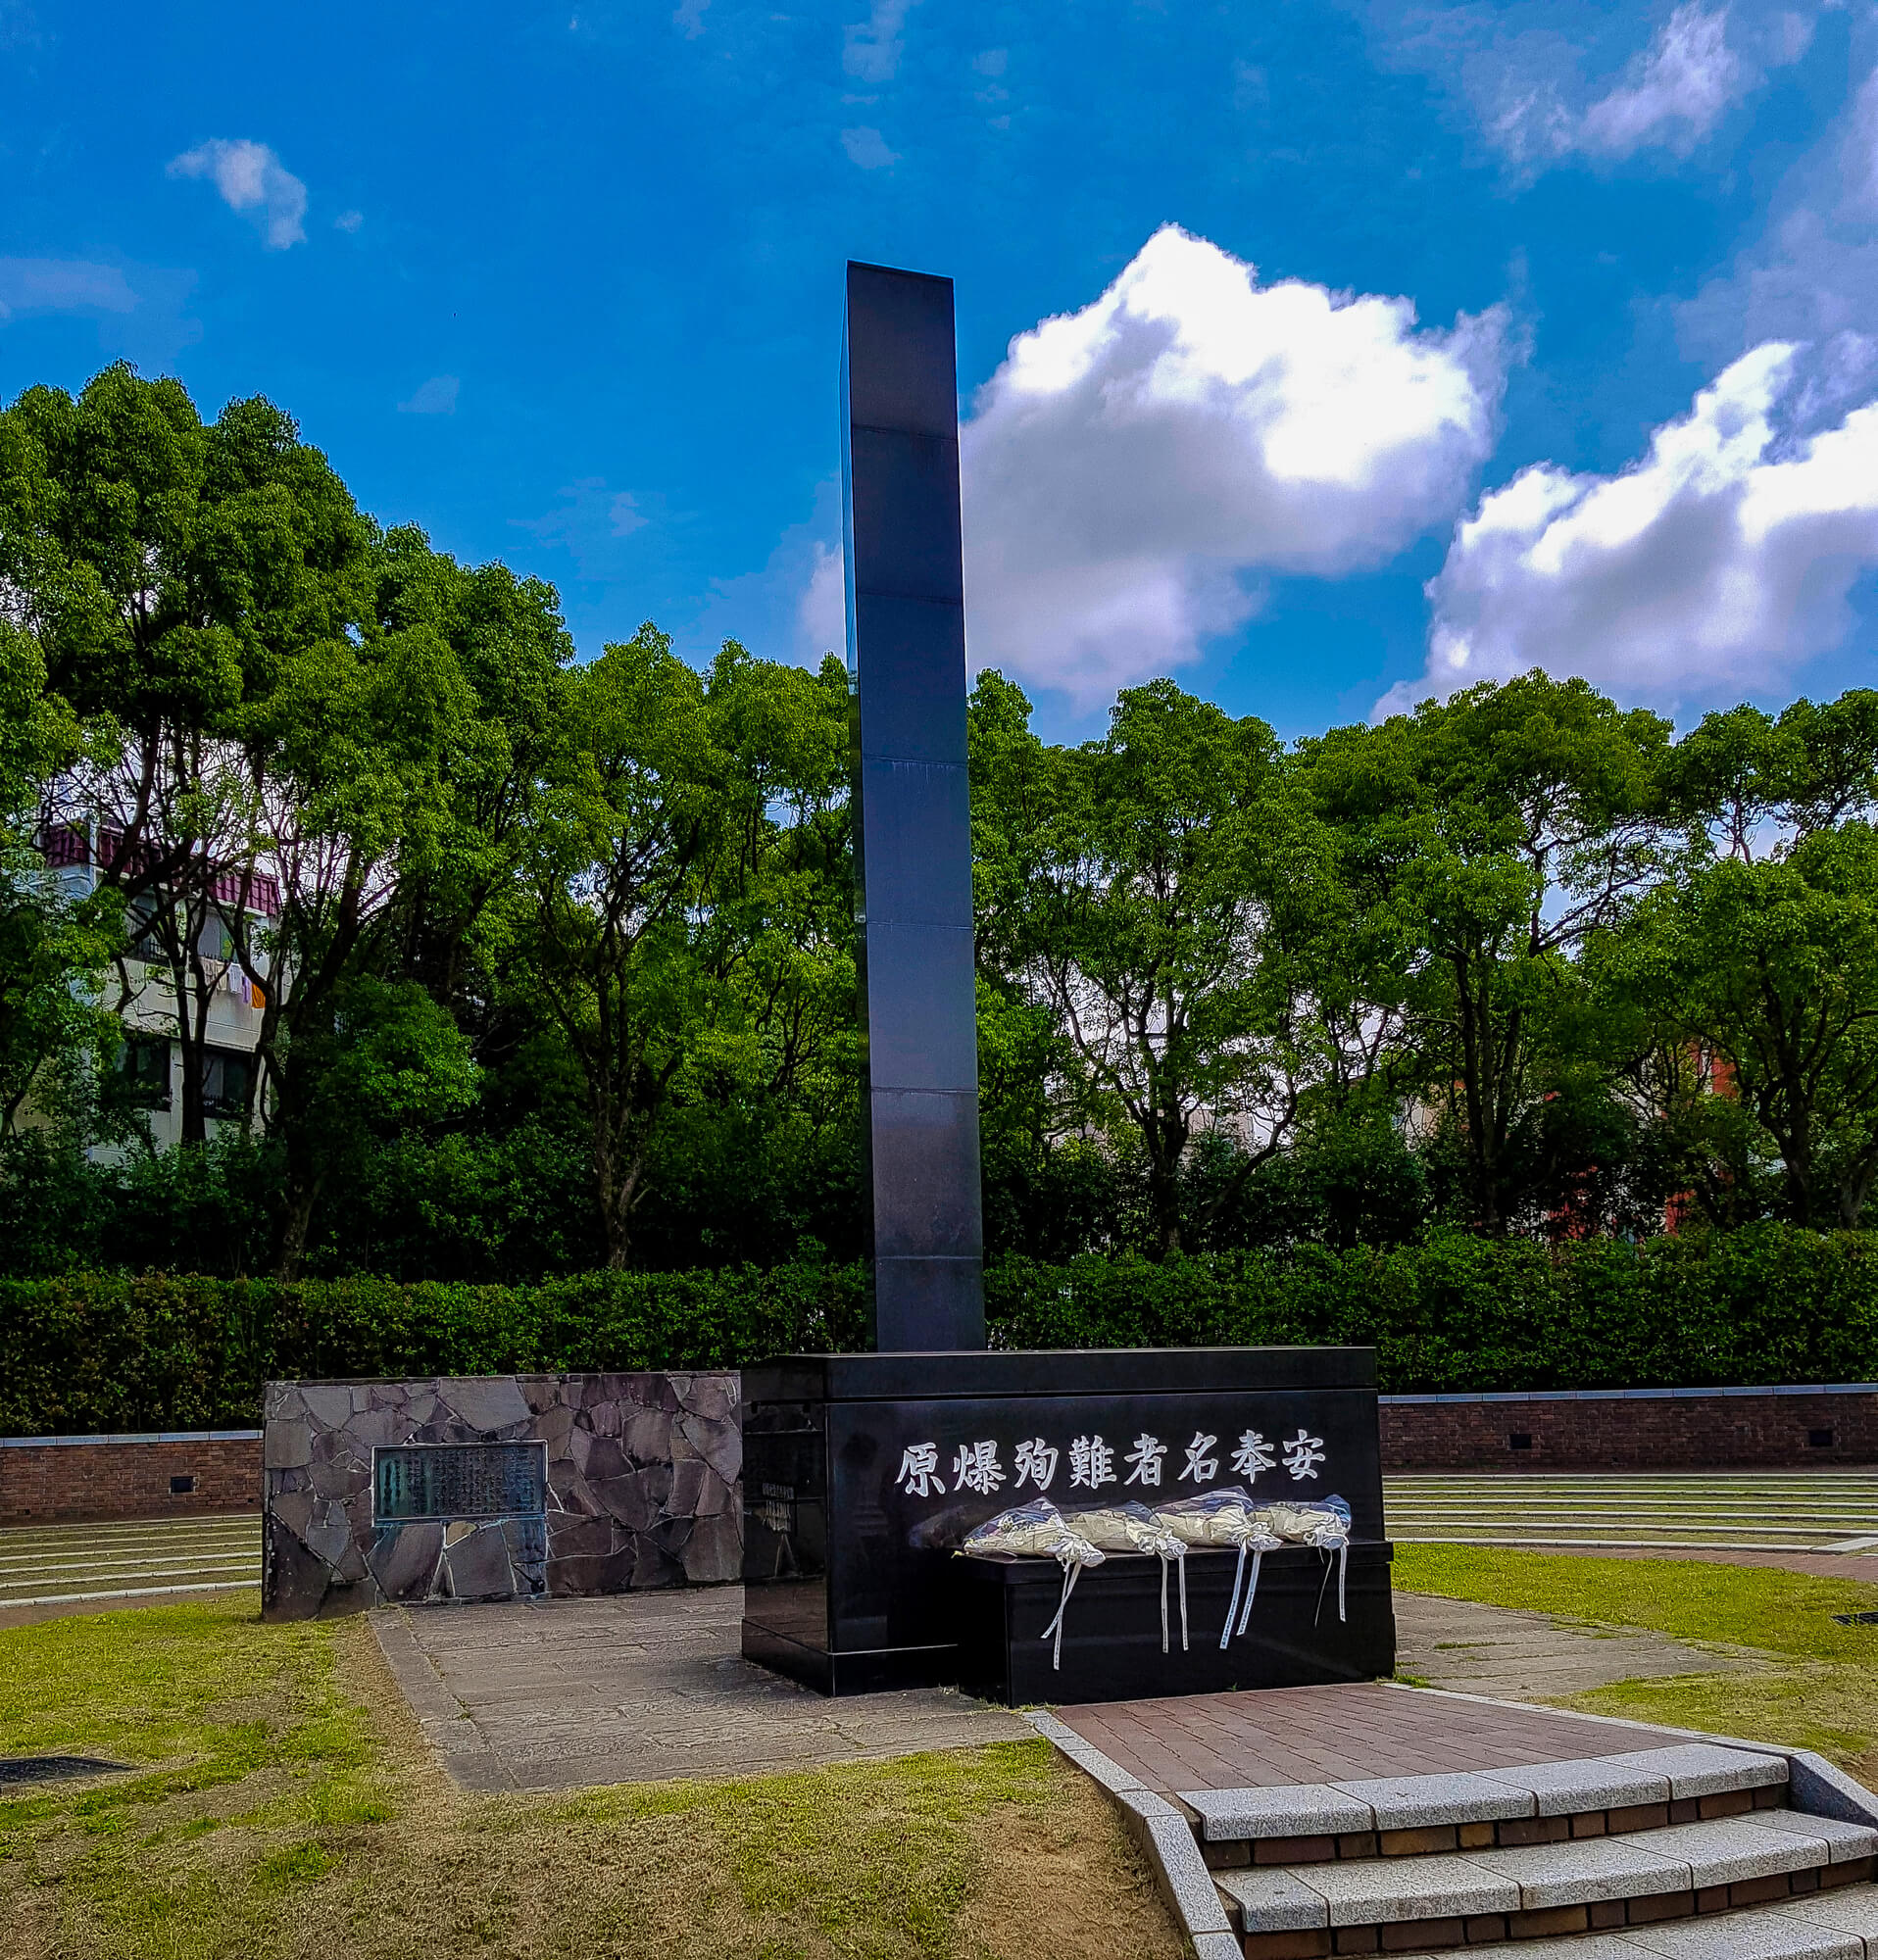 אנדרטה לזכר חללי פצצת האטום בנגסאקי, יפן